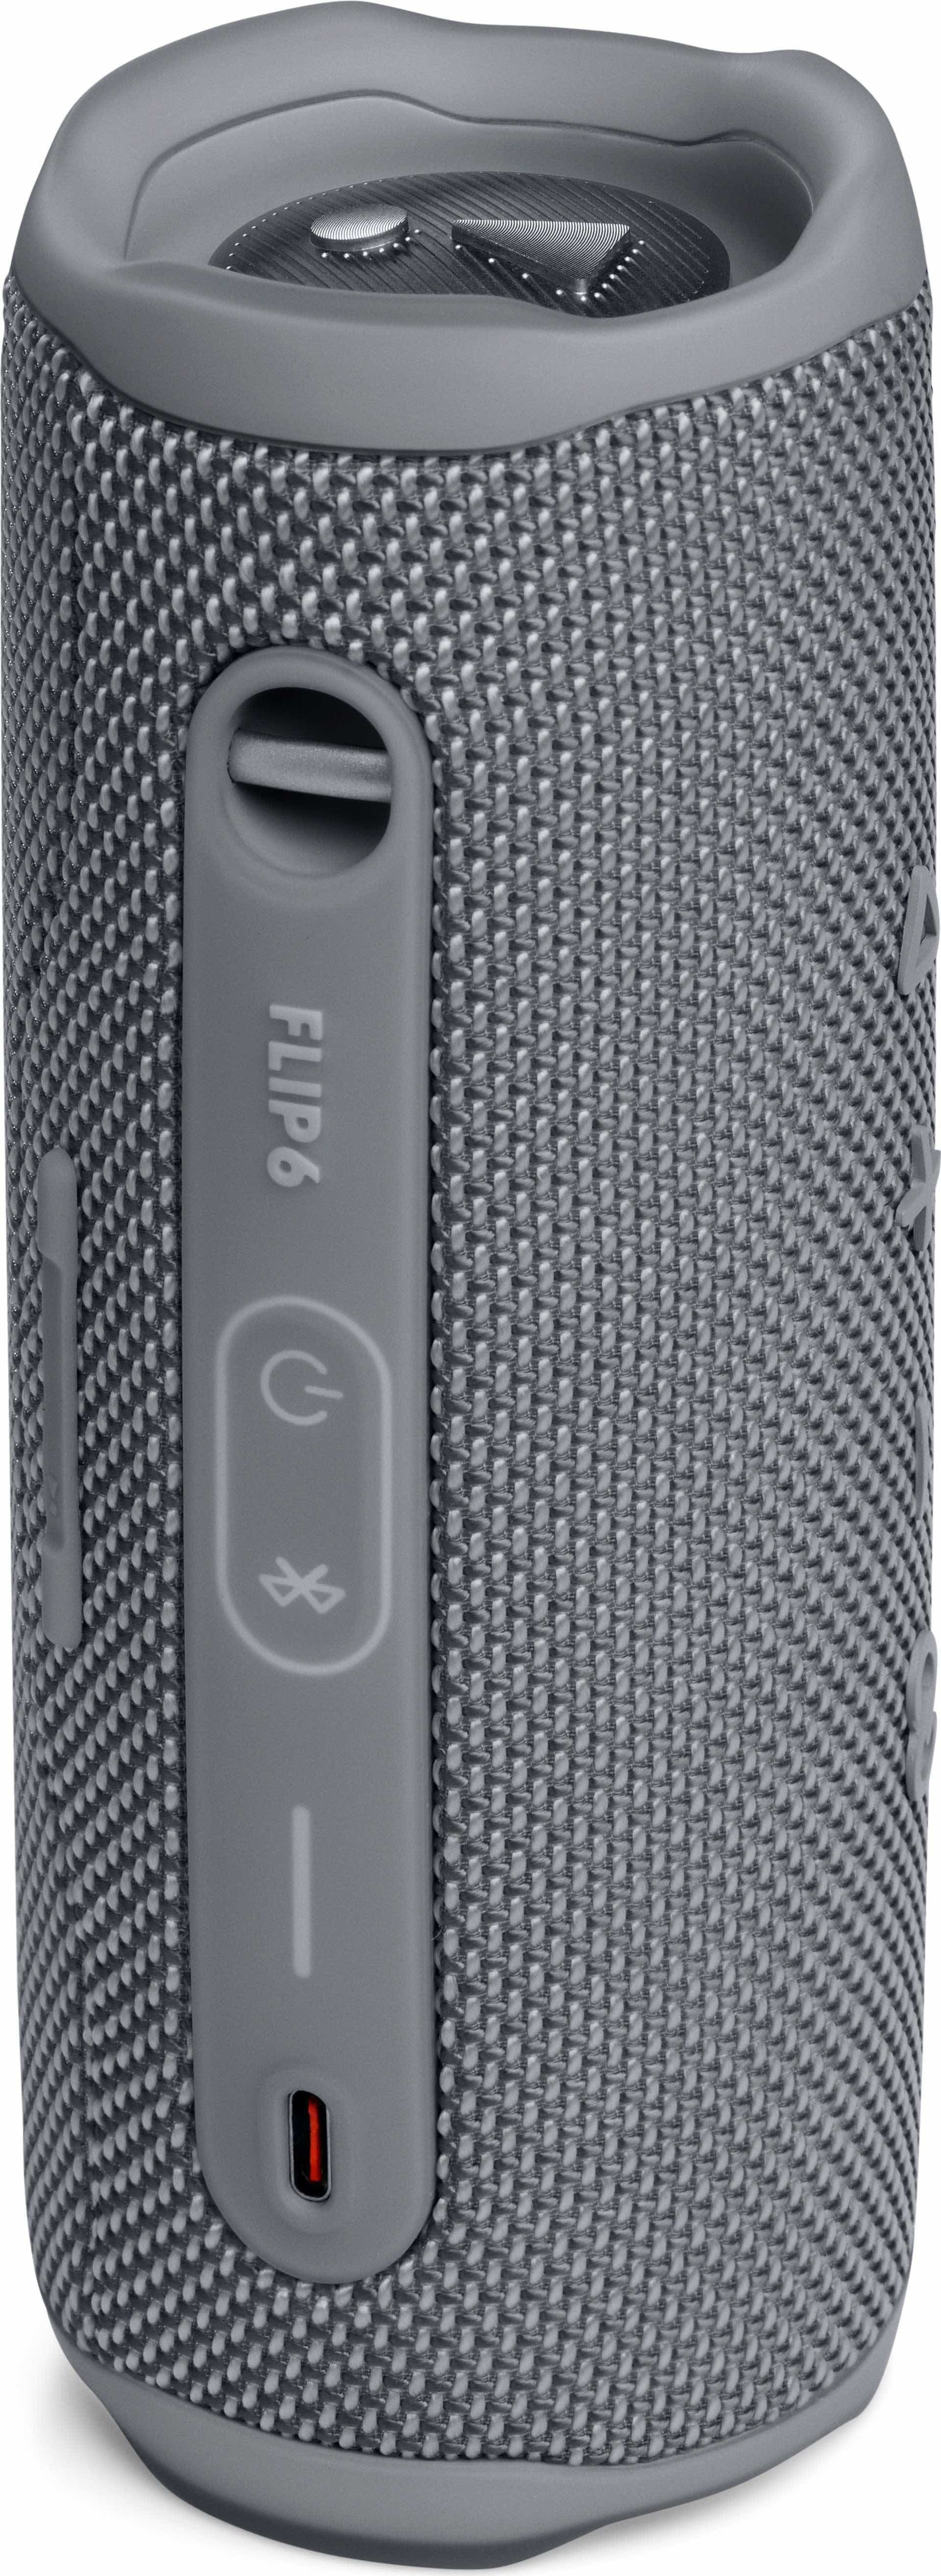 JBL Flip von Bluetooth Lautsprecher (Grau) expert Technomarkt 6